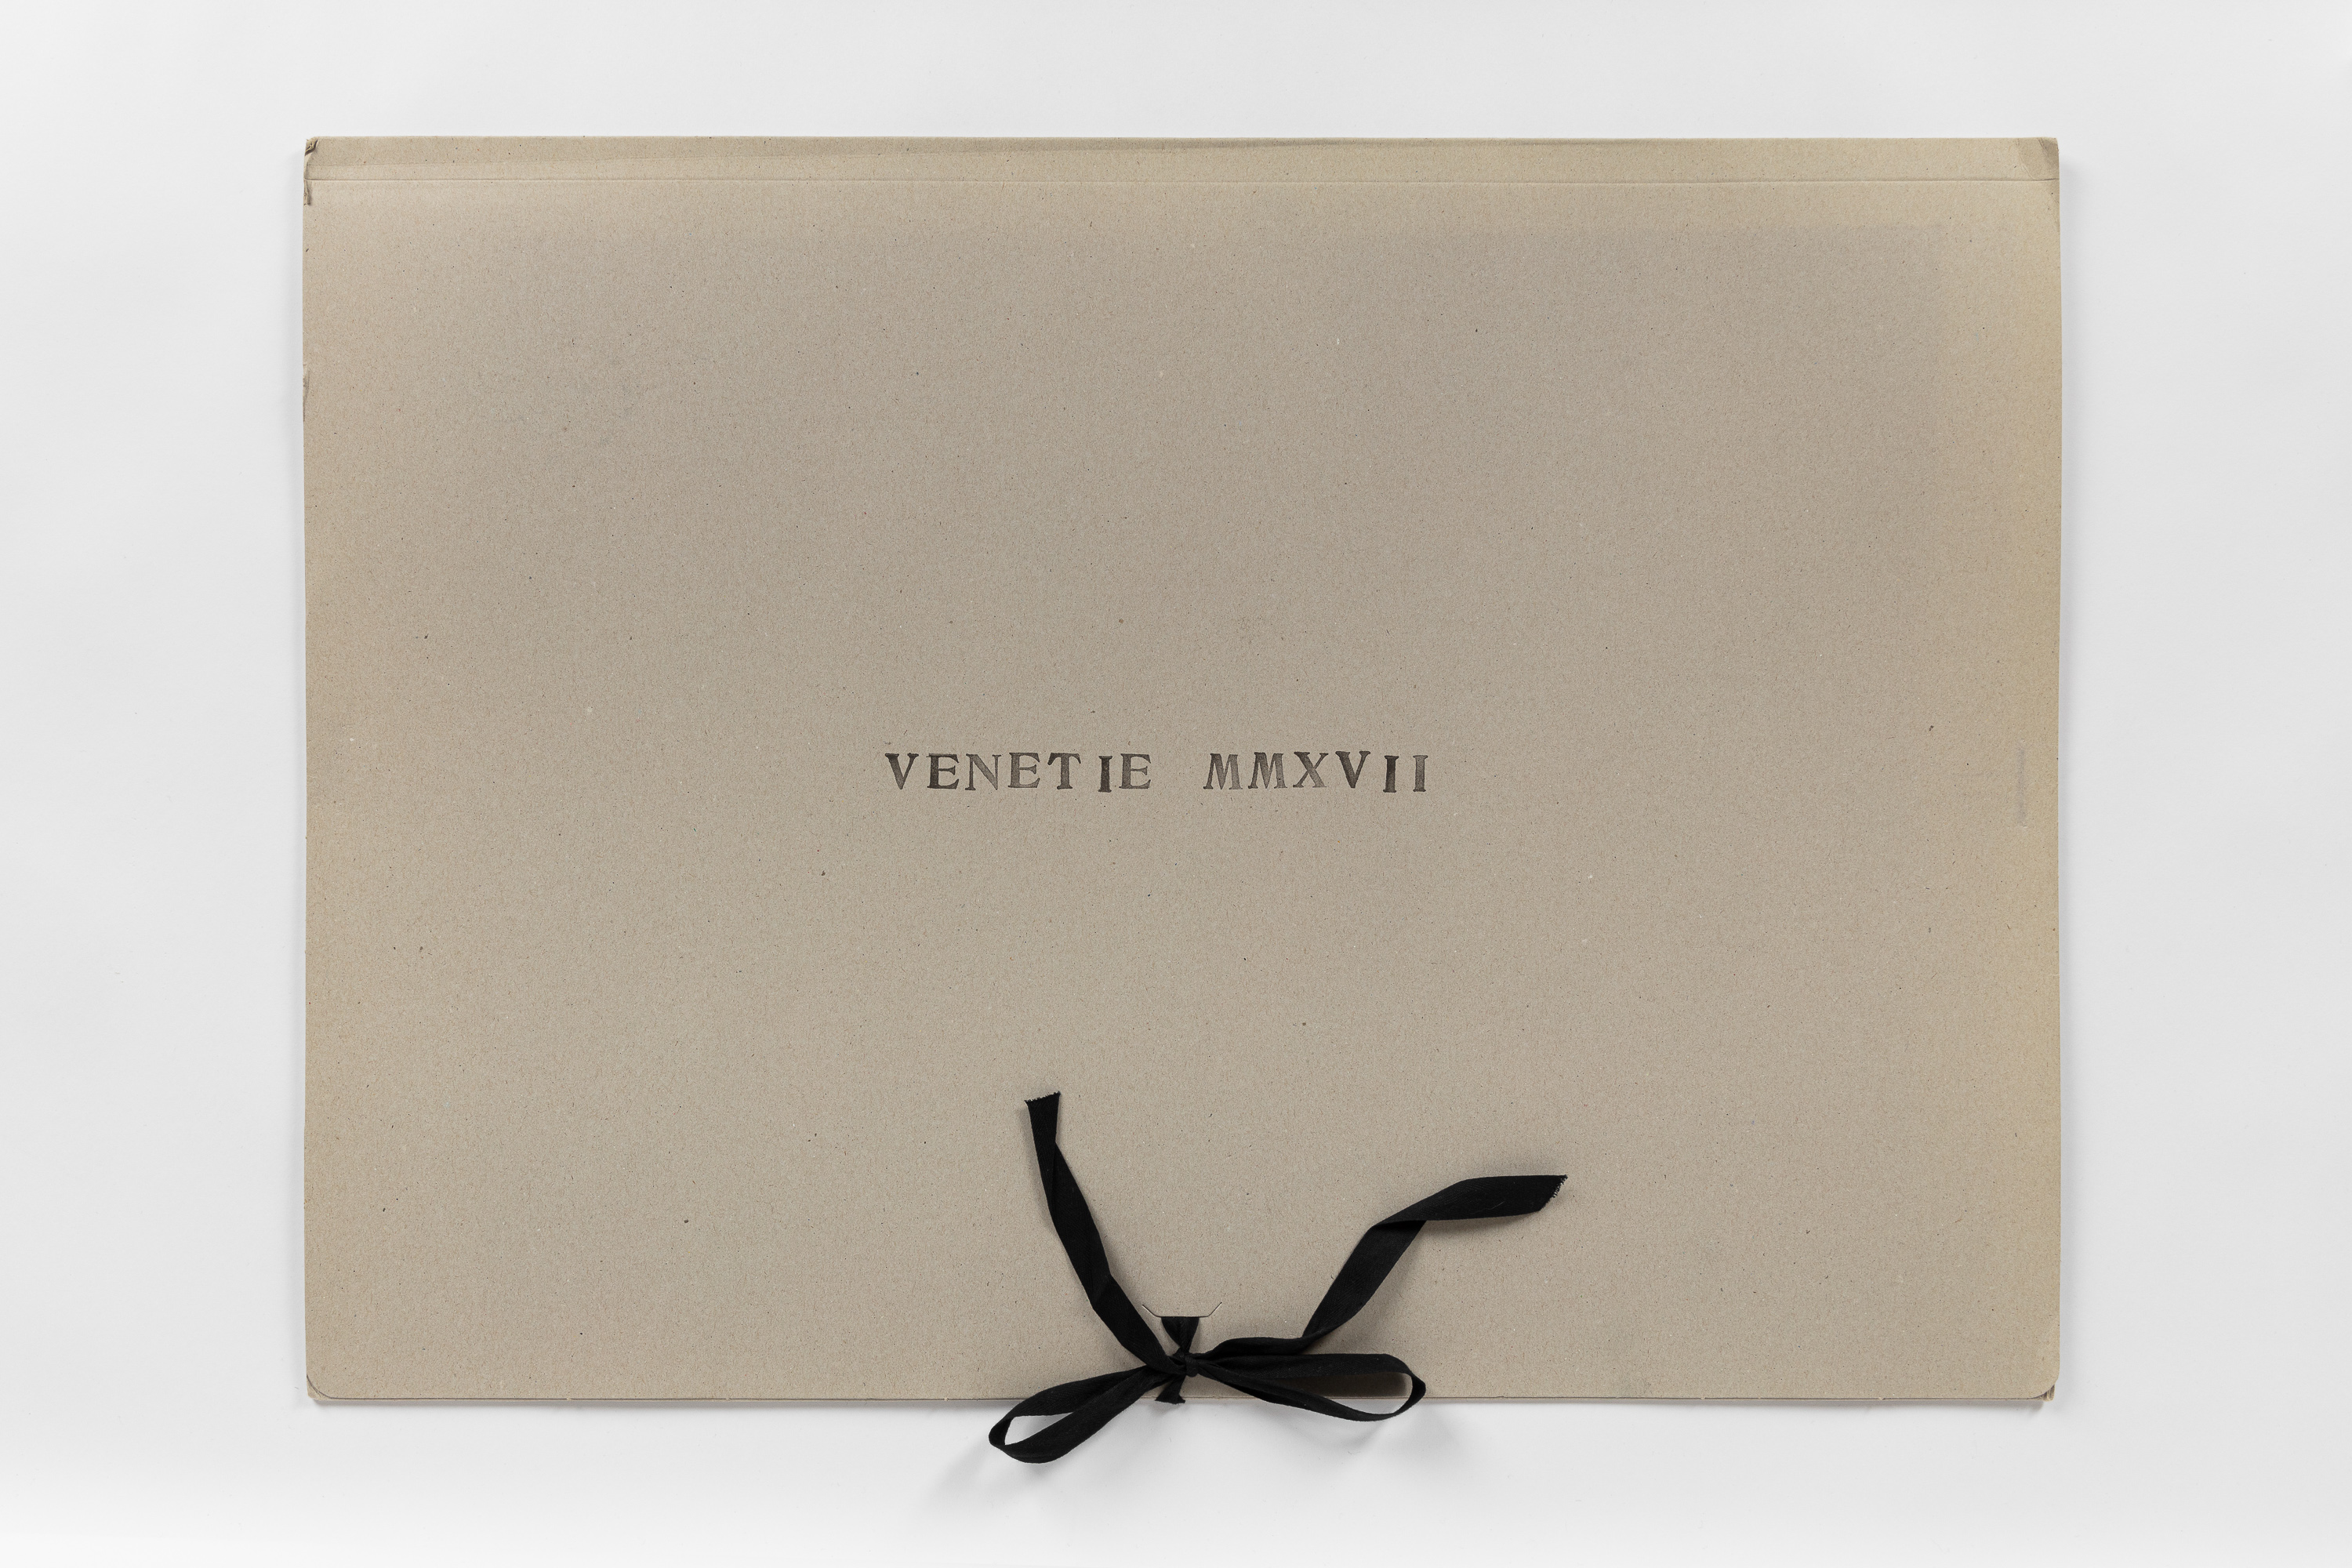 Venetie MMXVII, third state, unlimited edition